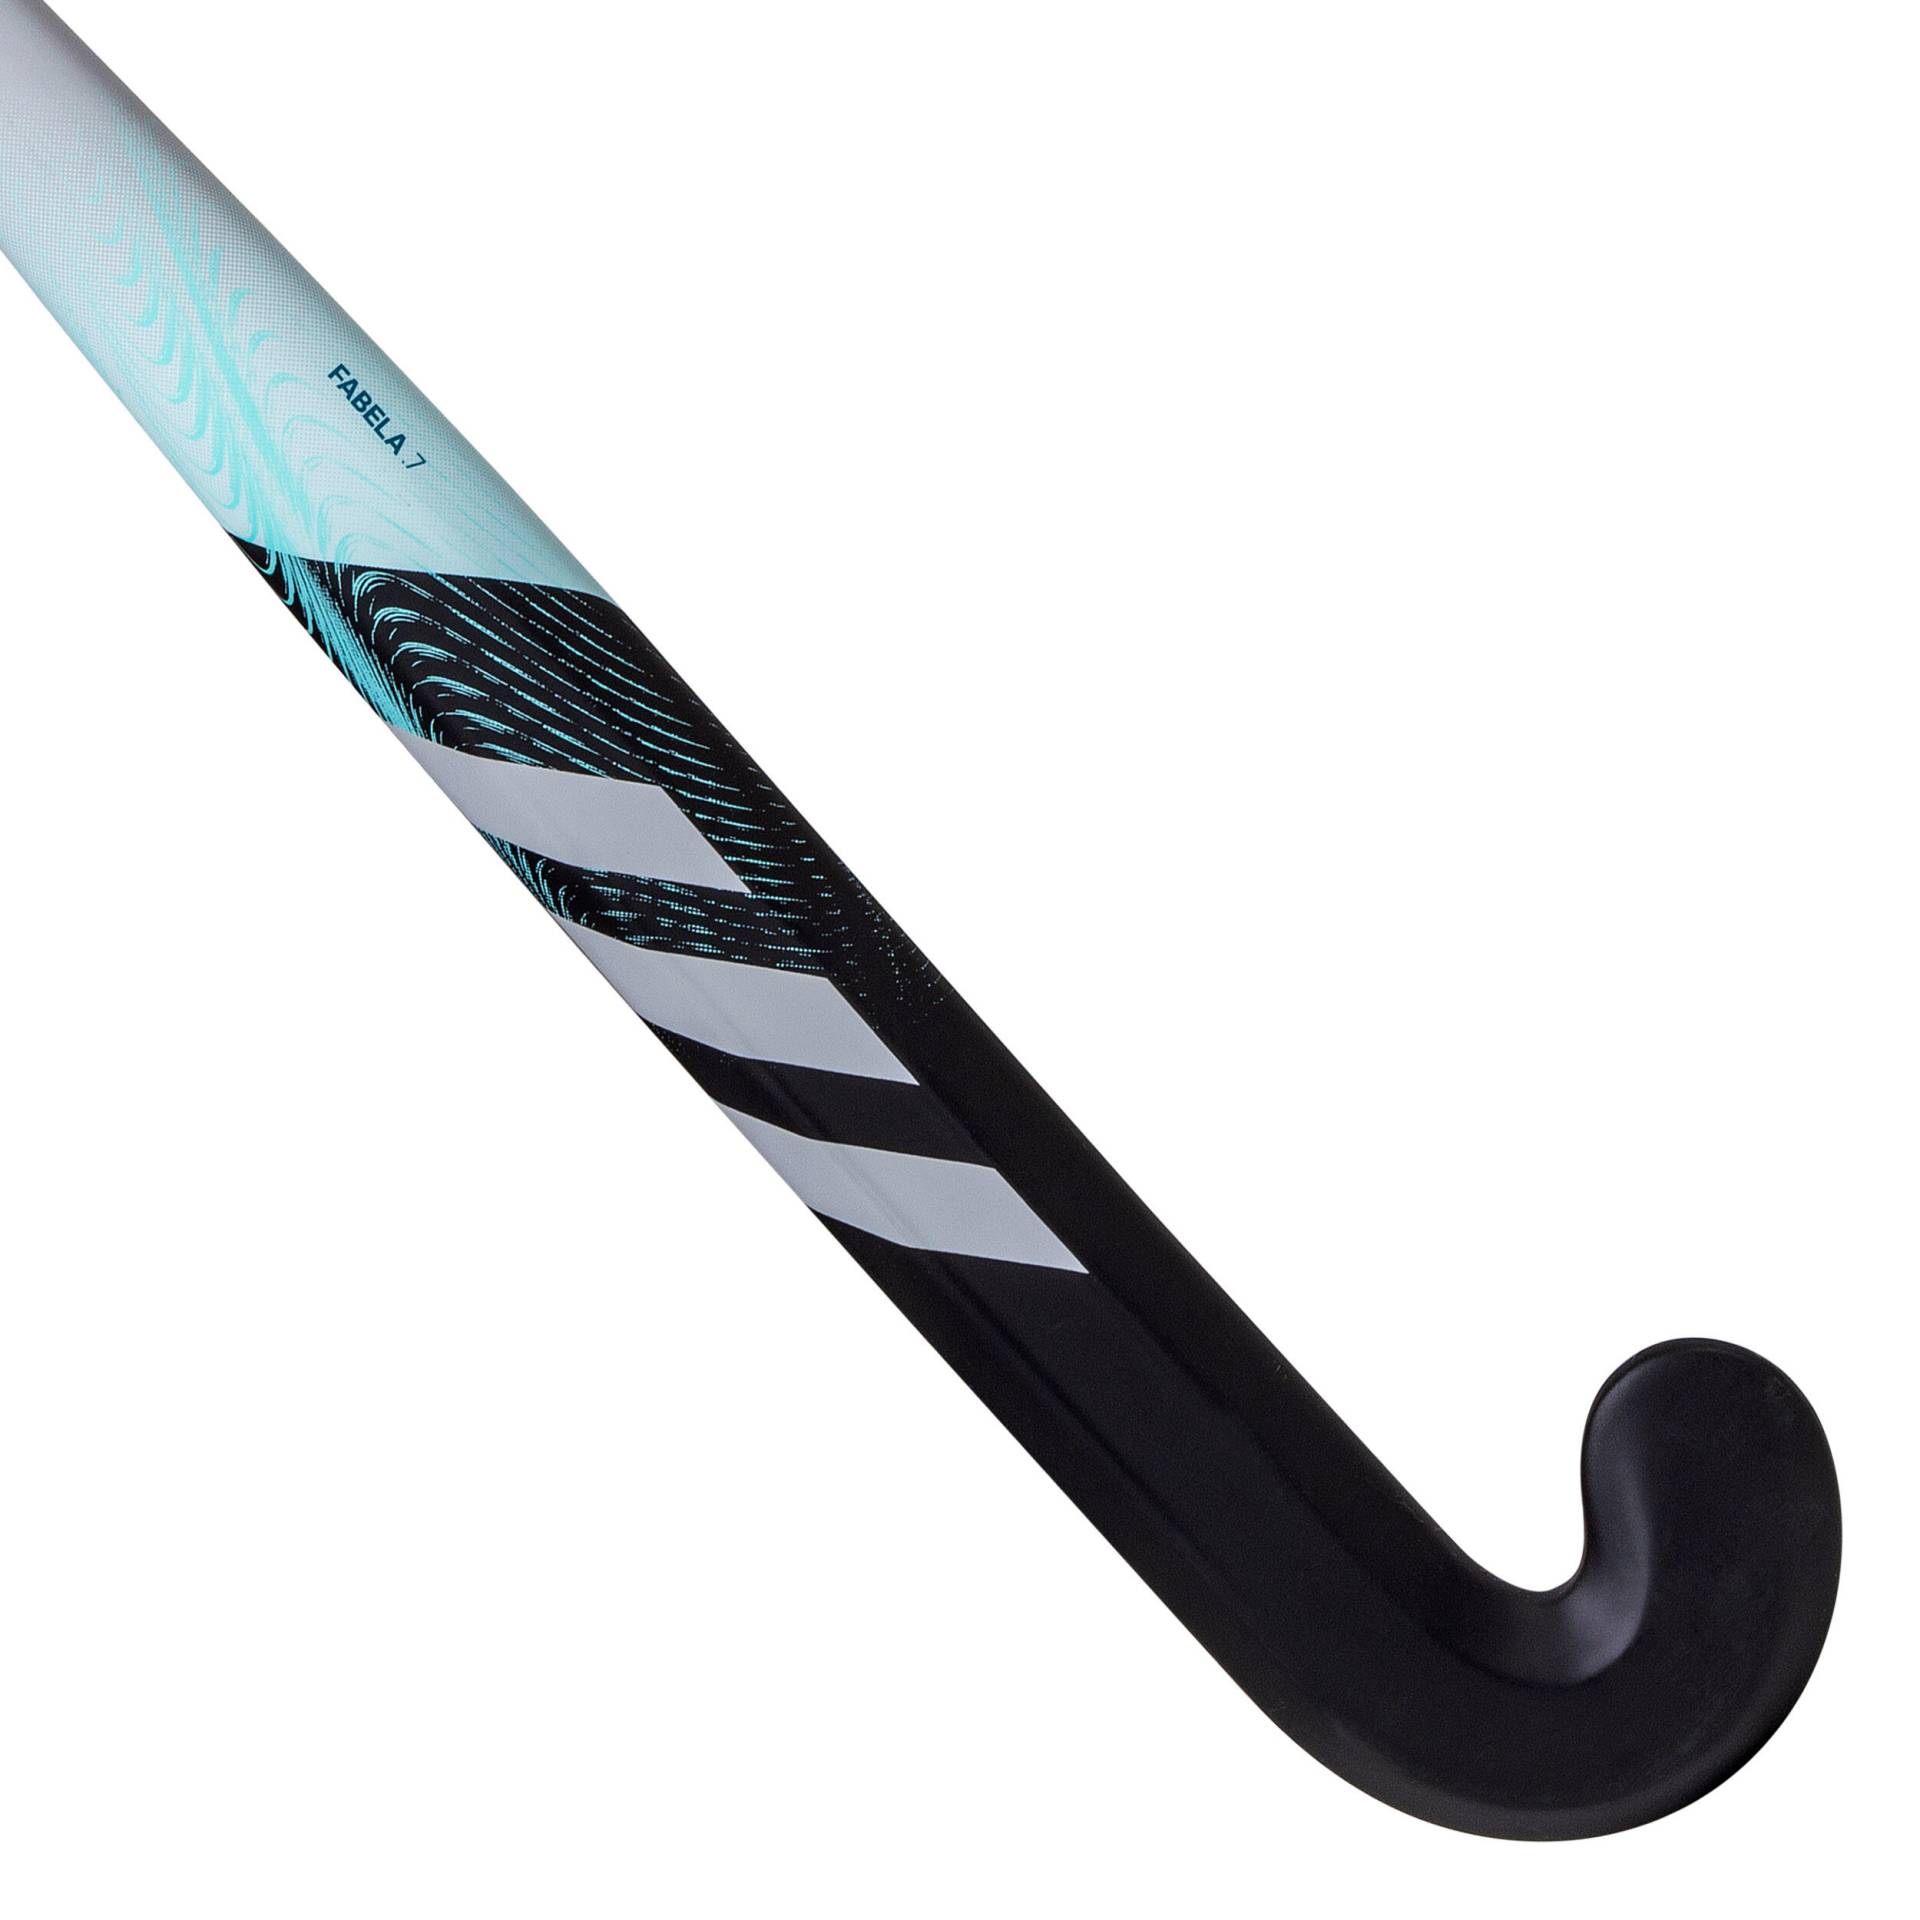 Damen/Herren Feldhockeyschläger für Fortgeschrittene Mid Bow 20 % Carbon - Fabela.7 schwarz/türkis von Adidas